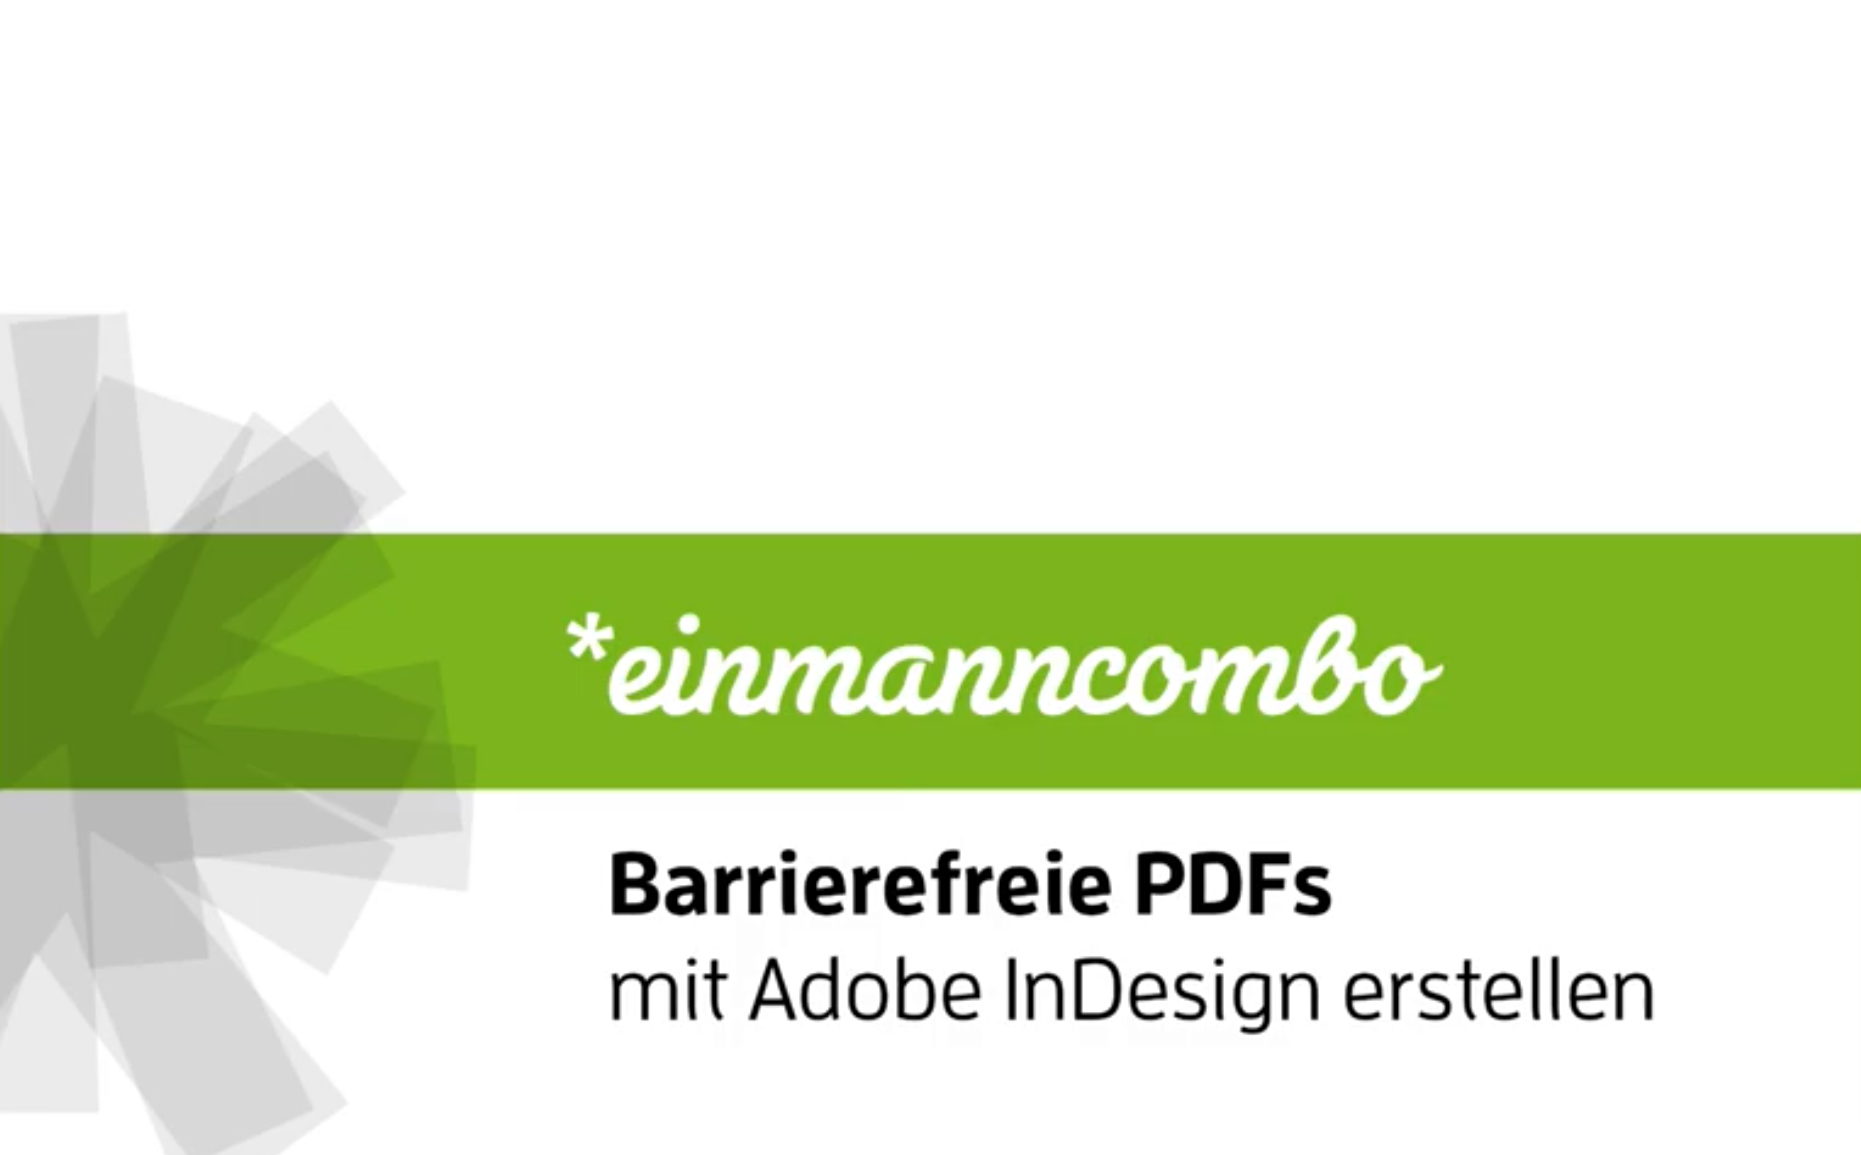 *einmannkombo Barrierefreie PDFs mit Adobe InDesign